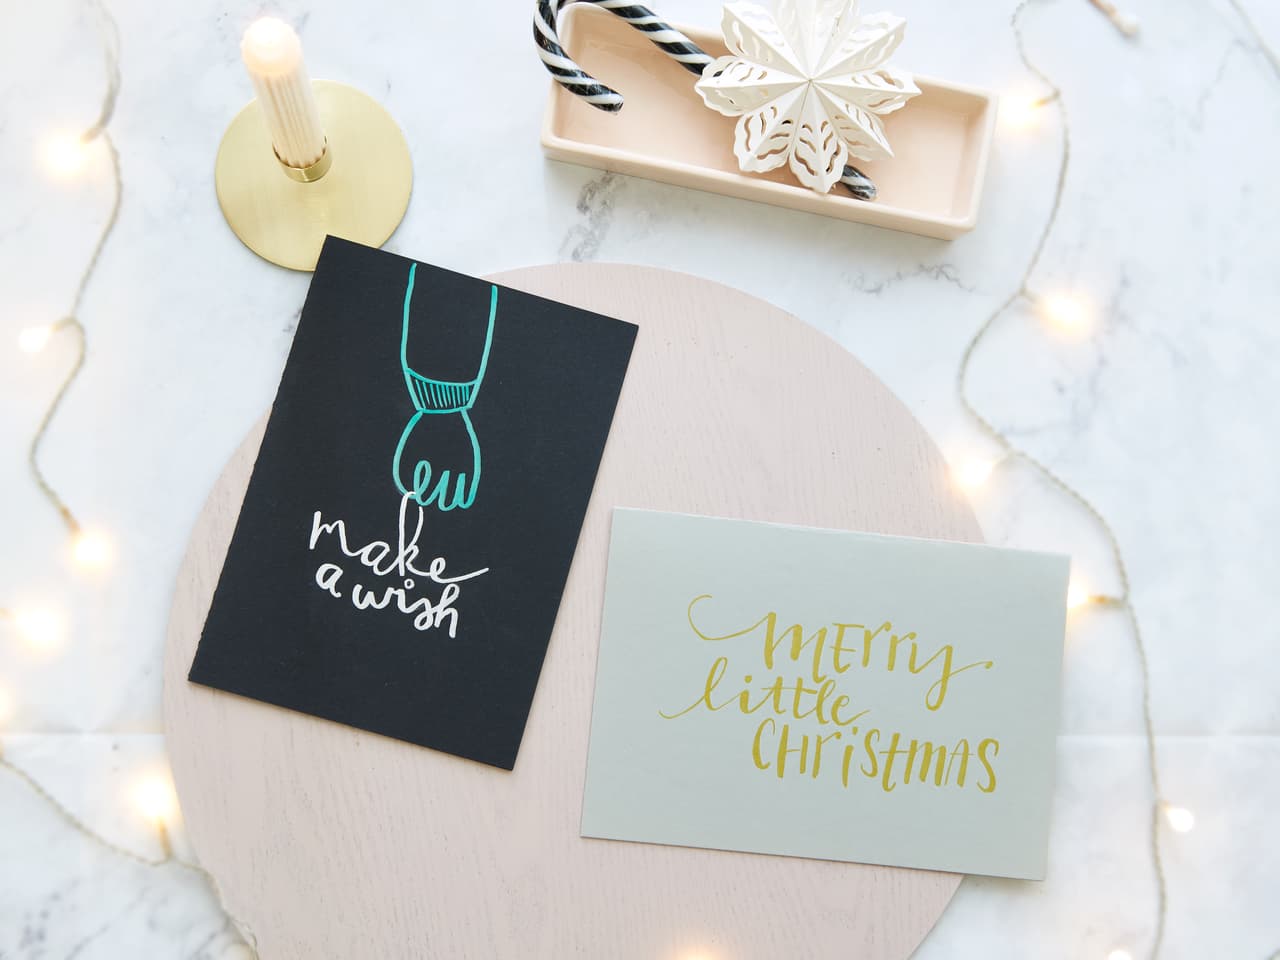 Festliche Weihnachtsgrußkarten zusammen mit einem dekorativen Tablett und Lichterketten schaffen eine warme und einladende Weihnachtsatmosphäre mit dem Schimmer der metallischen Pinselstift-Akzente von edding 1340.